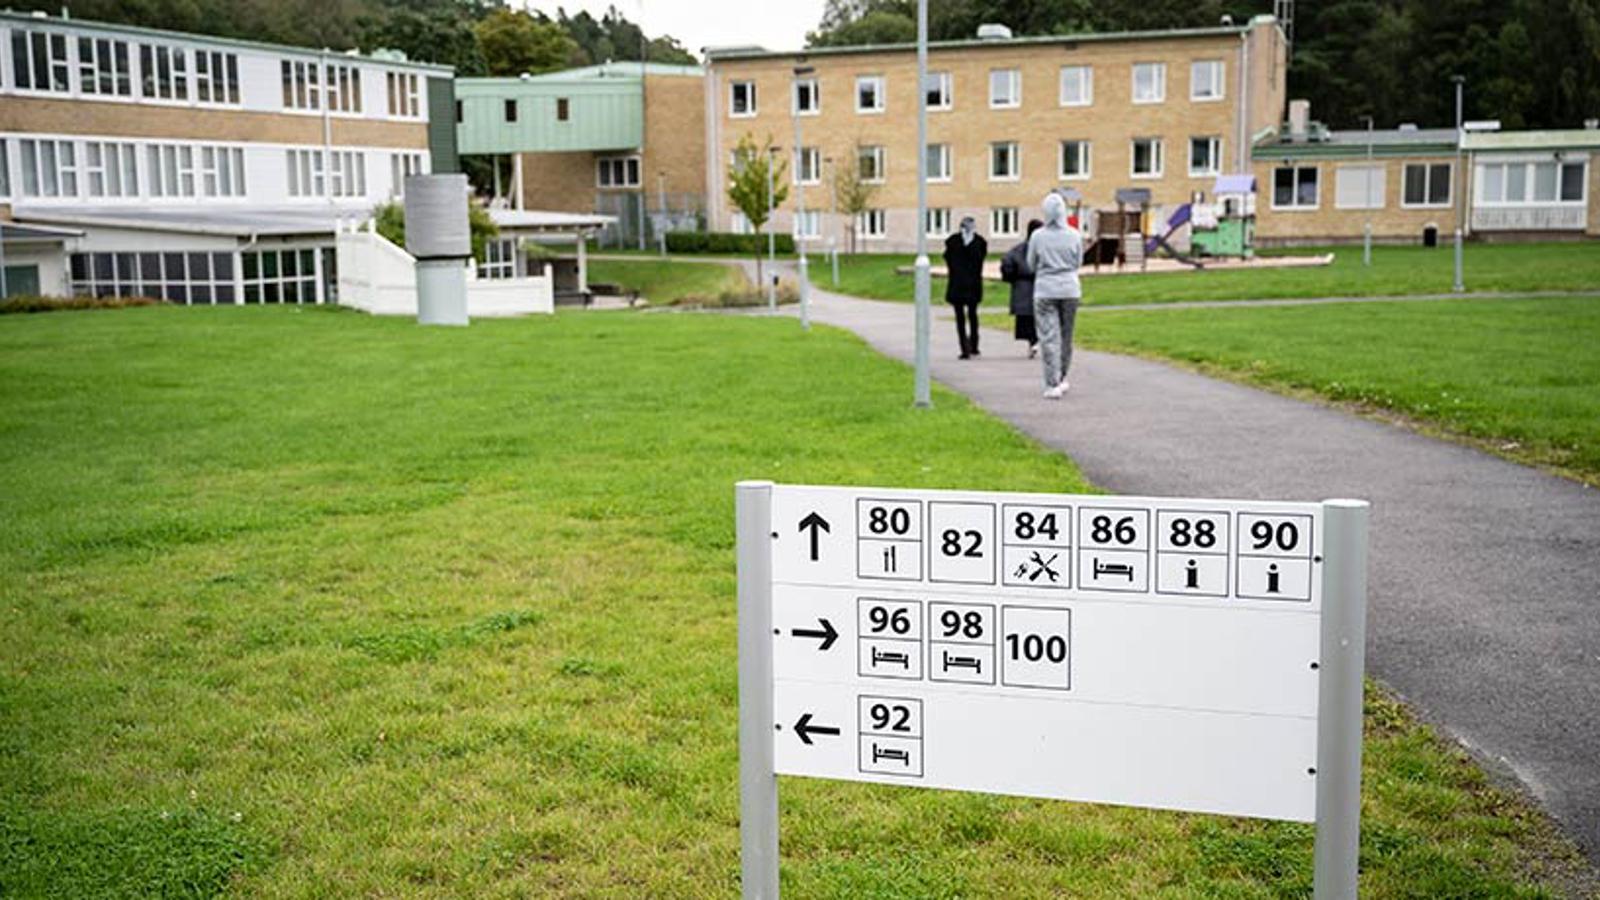 Området vid Migrationsverket Sagåsen i Kållered. På området syns tre personer som går på en väg mot byggnaden.